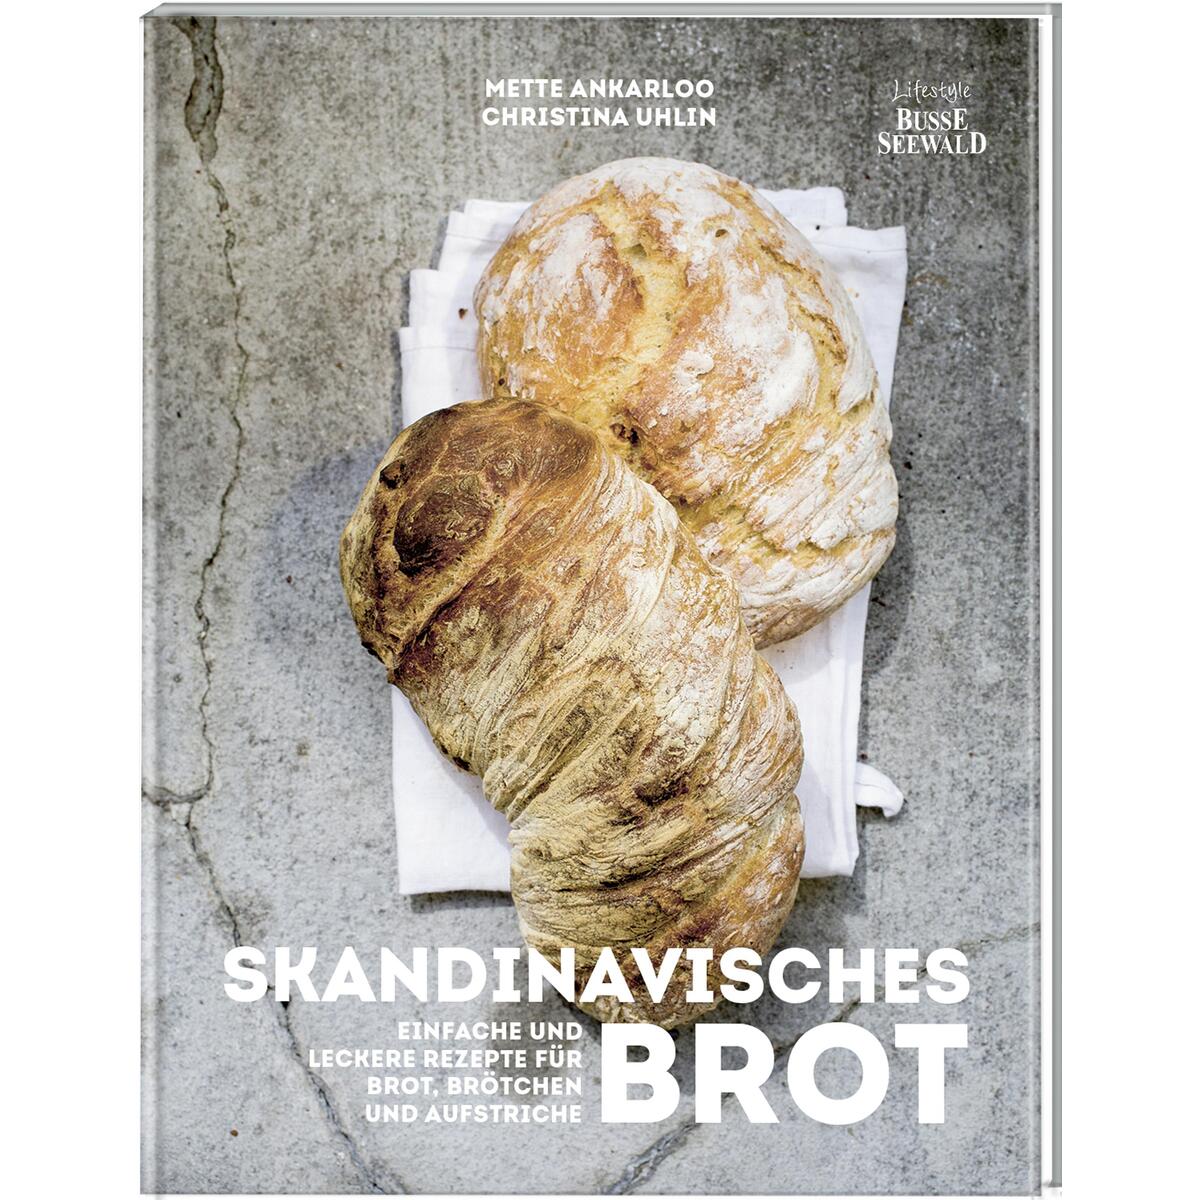 Skandinavisches Brot. Einfache und leckere Rezepte für Brot, Brötchen und Aufstr... von Busse-Seewald Verlag